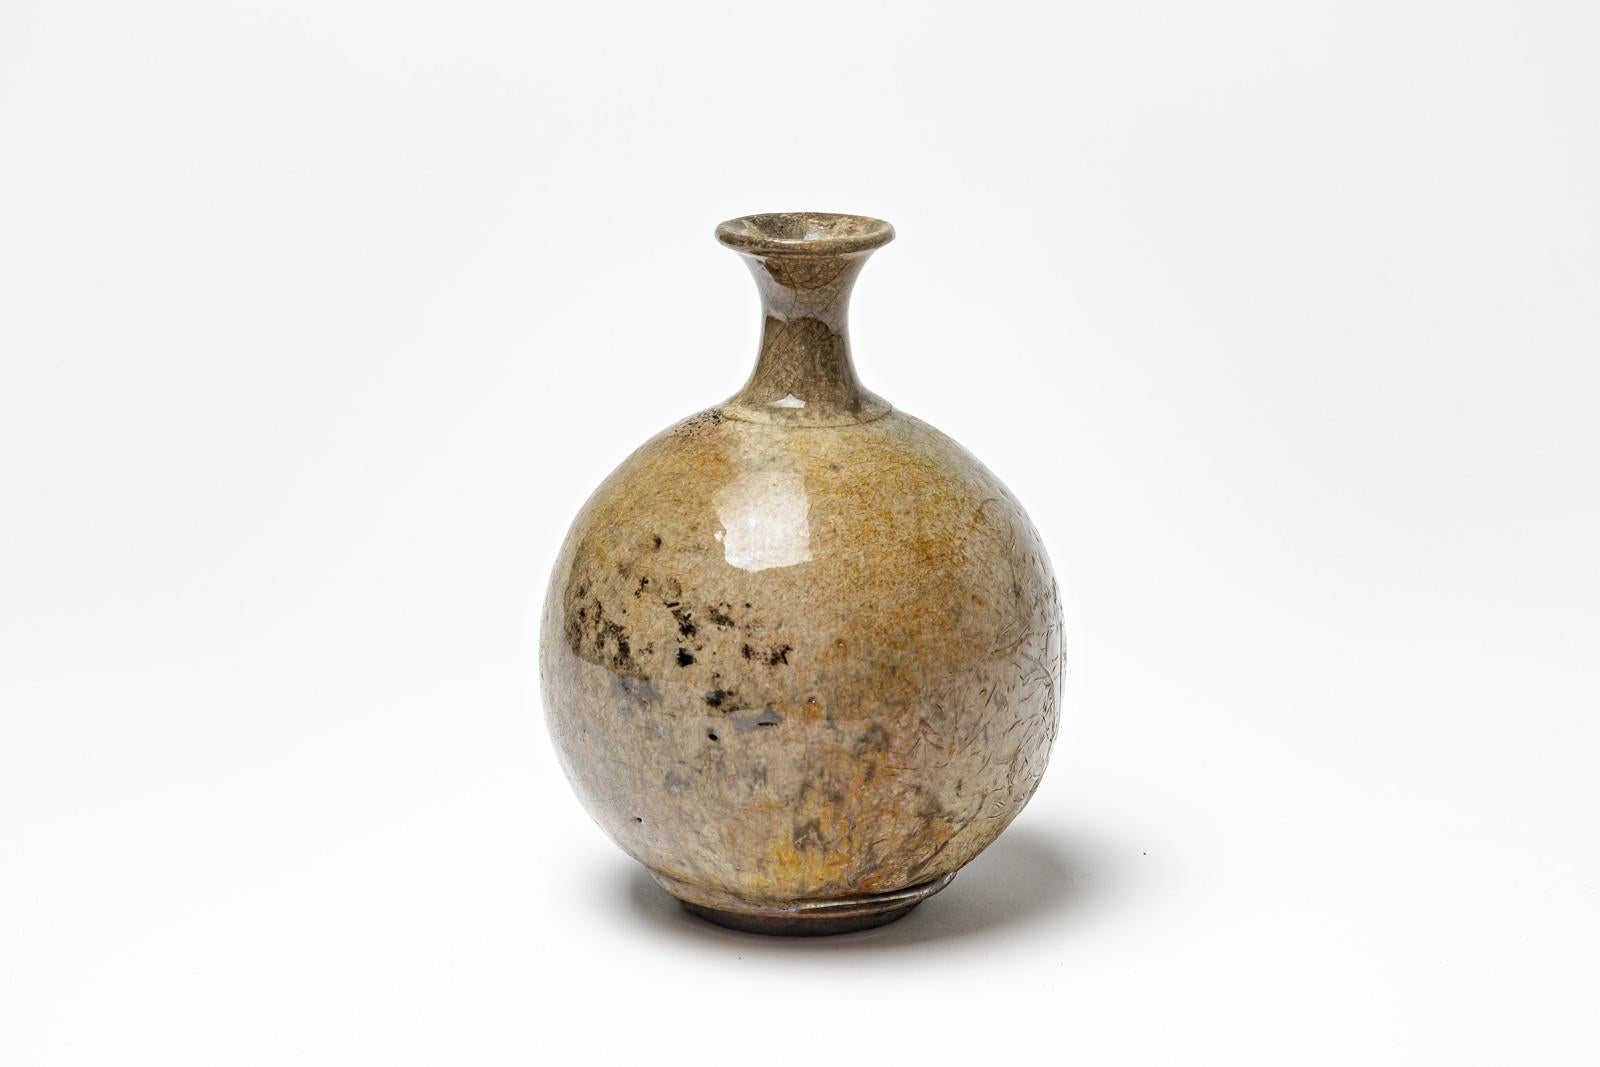 Vase en céramique émaillée jaune/brun de Gisèle Buthod Garçon. 
Raku a tiré. Monogramme de l'artiste sous la base. Vers 1980-1990.
H : 6.3' x 3.9' pouces.